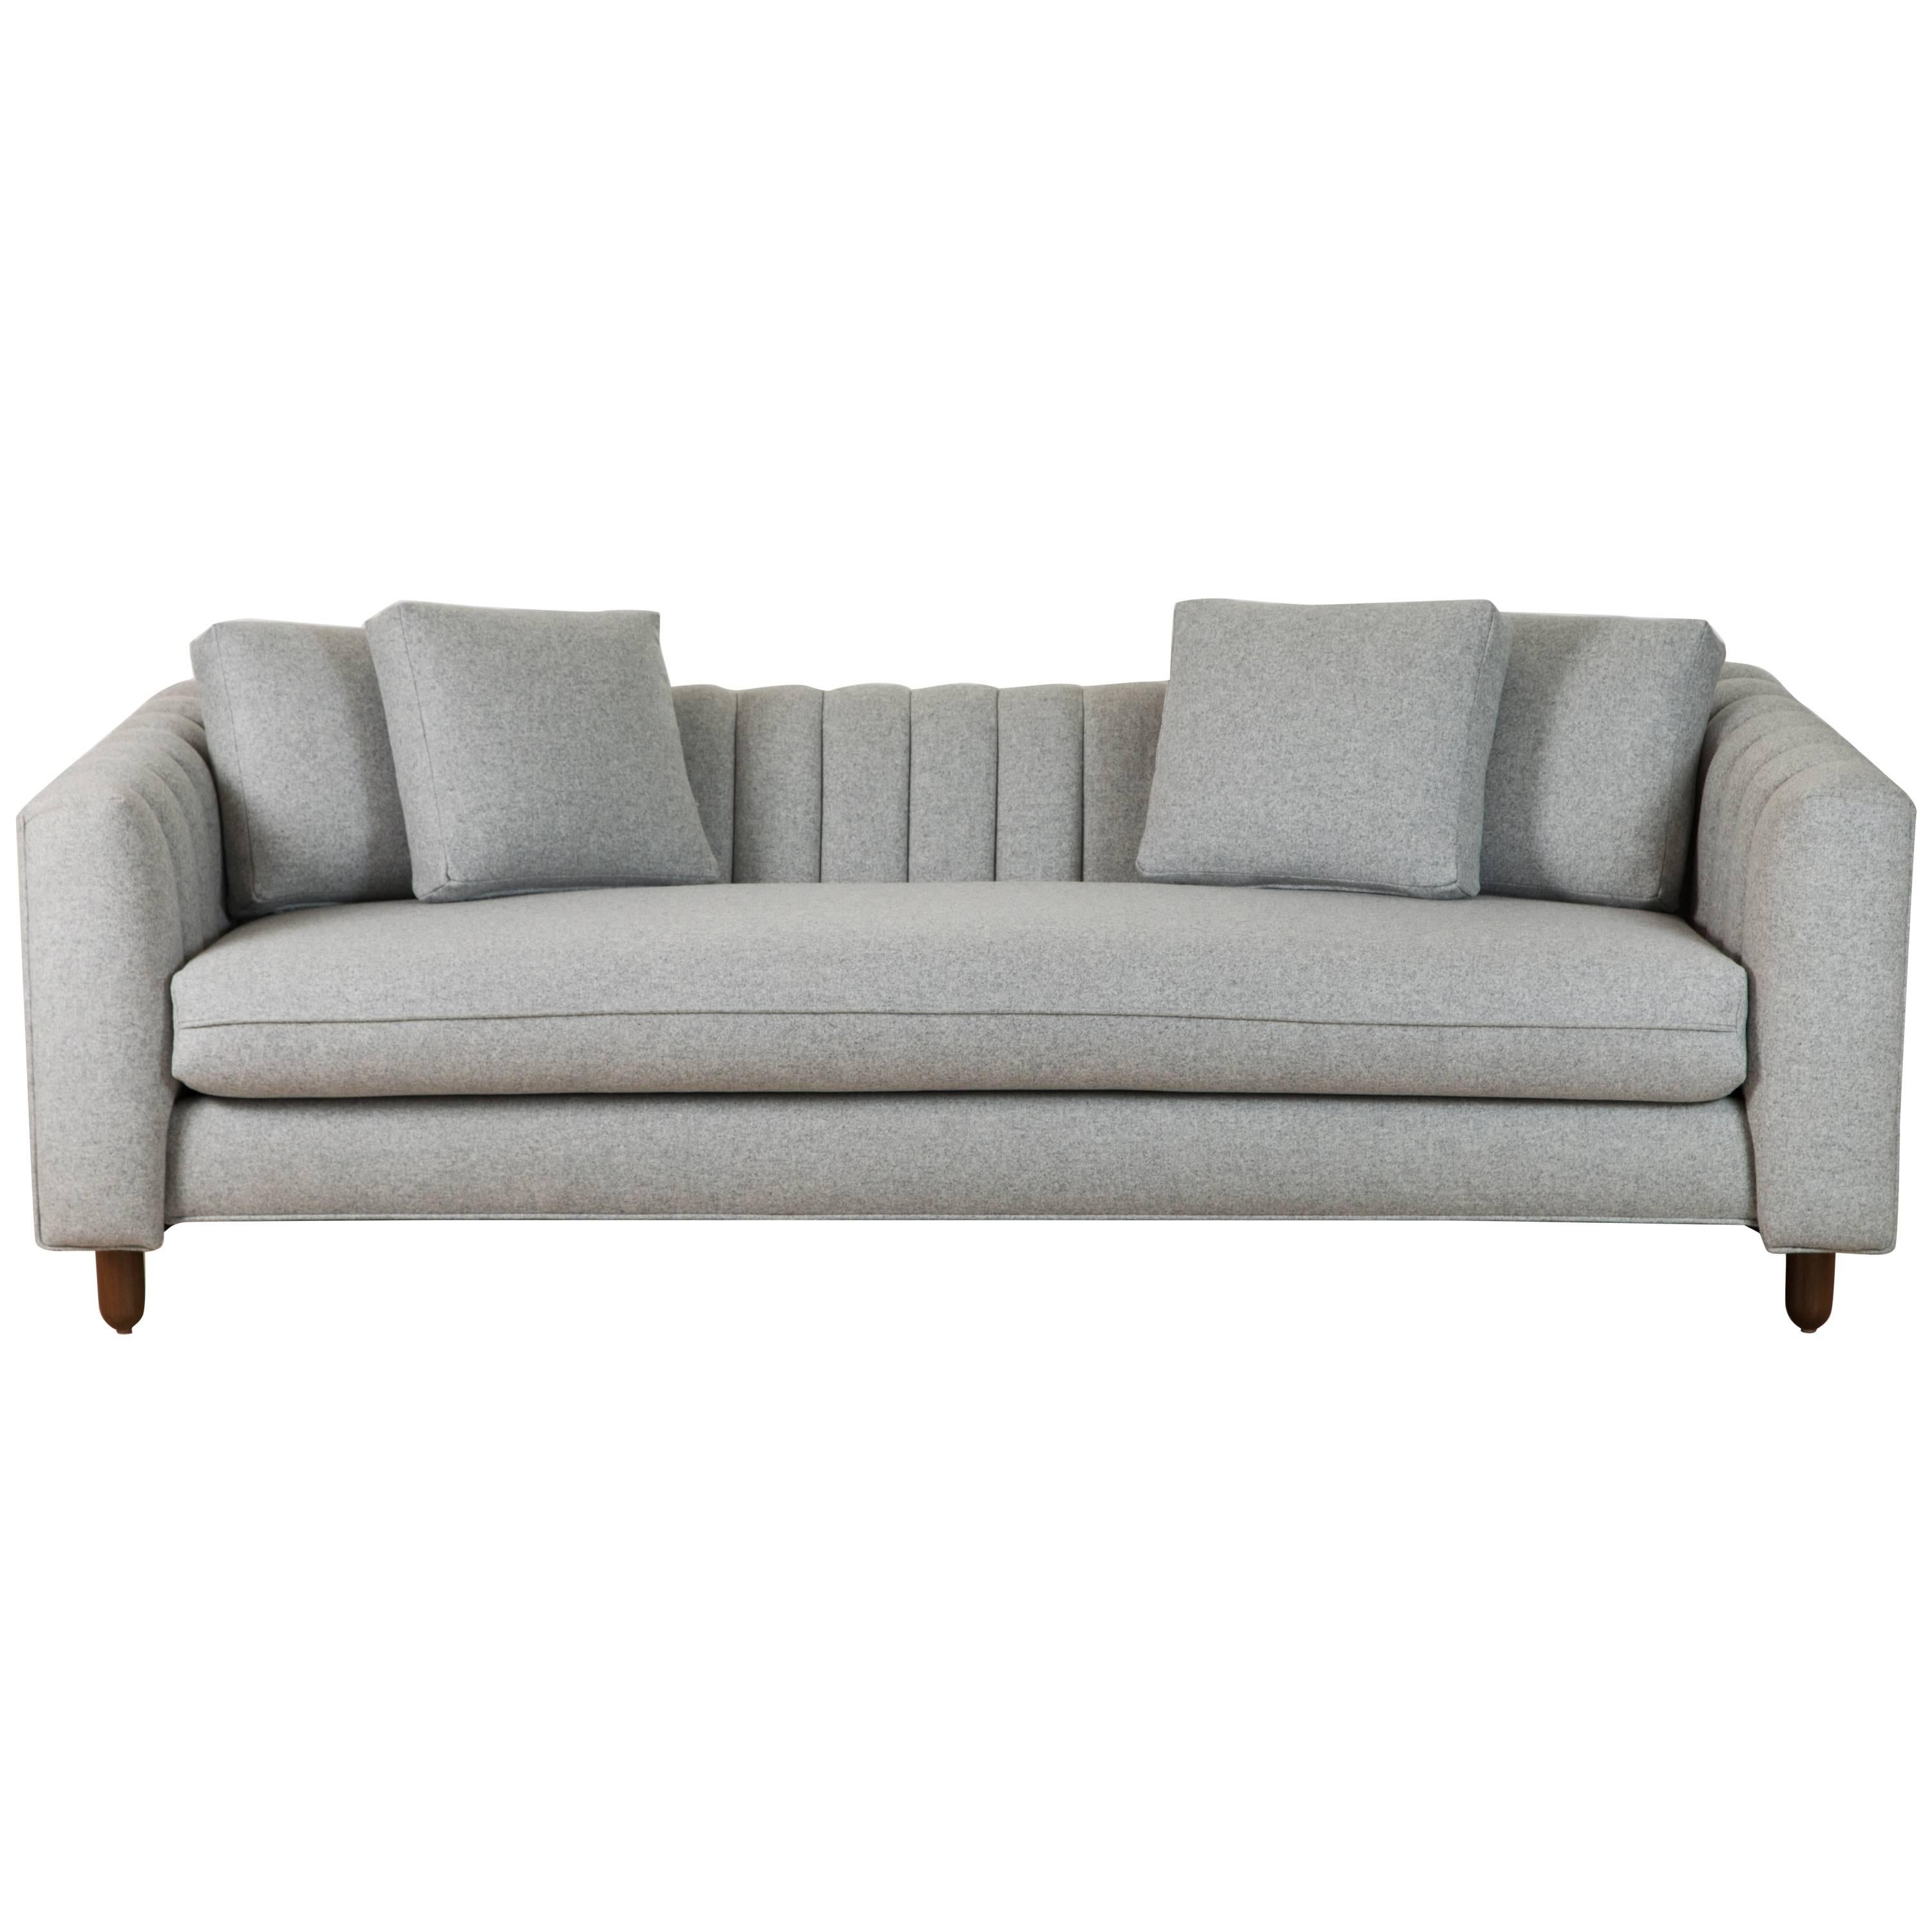 Isherwood Sofa by Lawson-Fenning